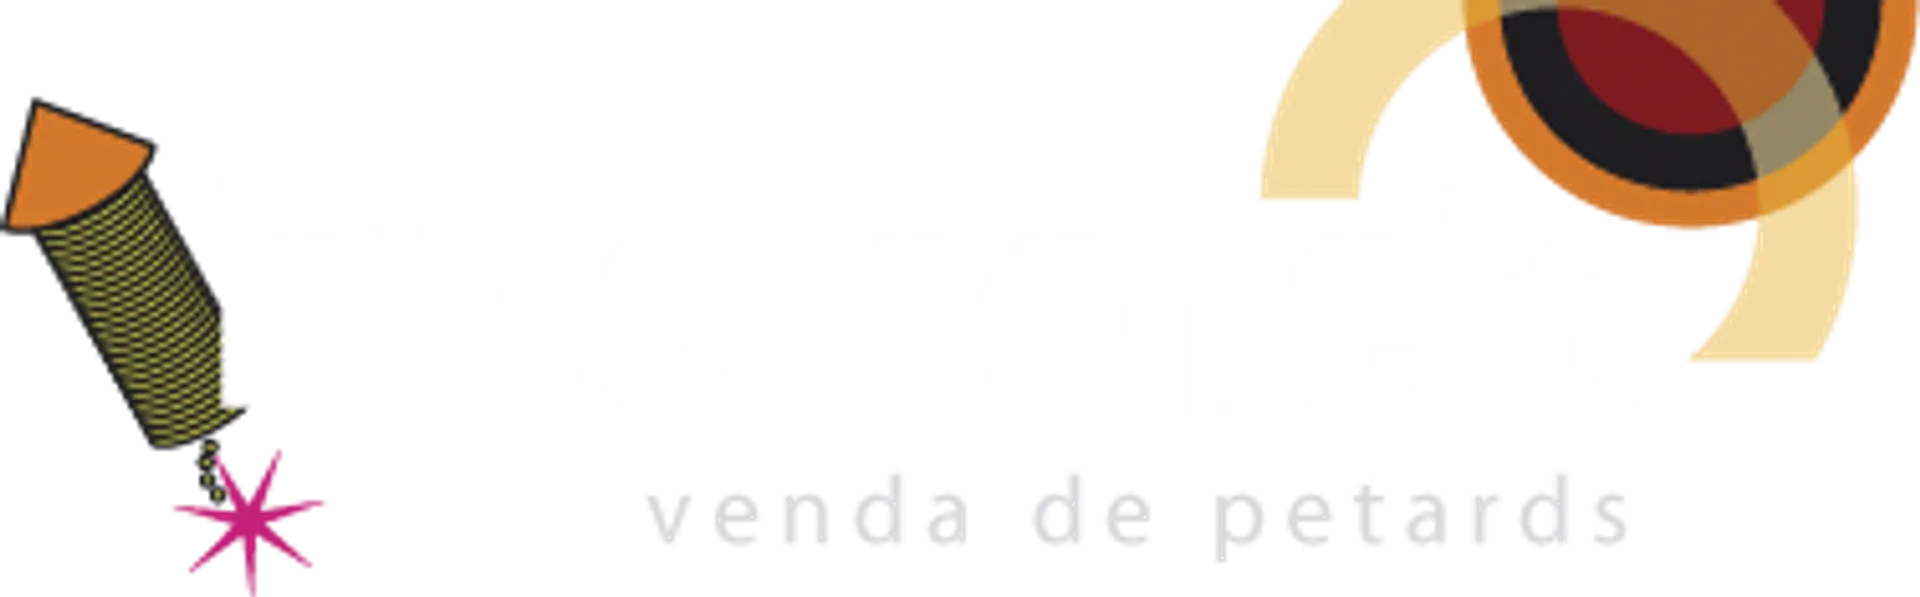 HIPERCOHETE logo de catálogo